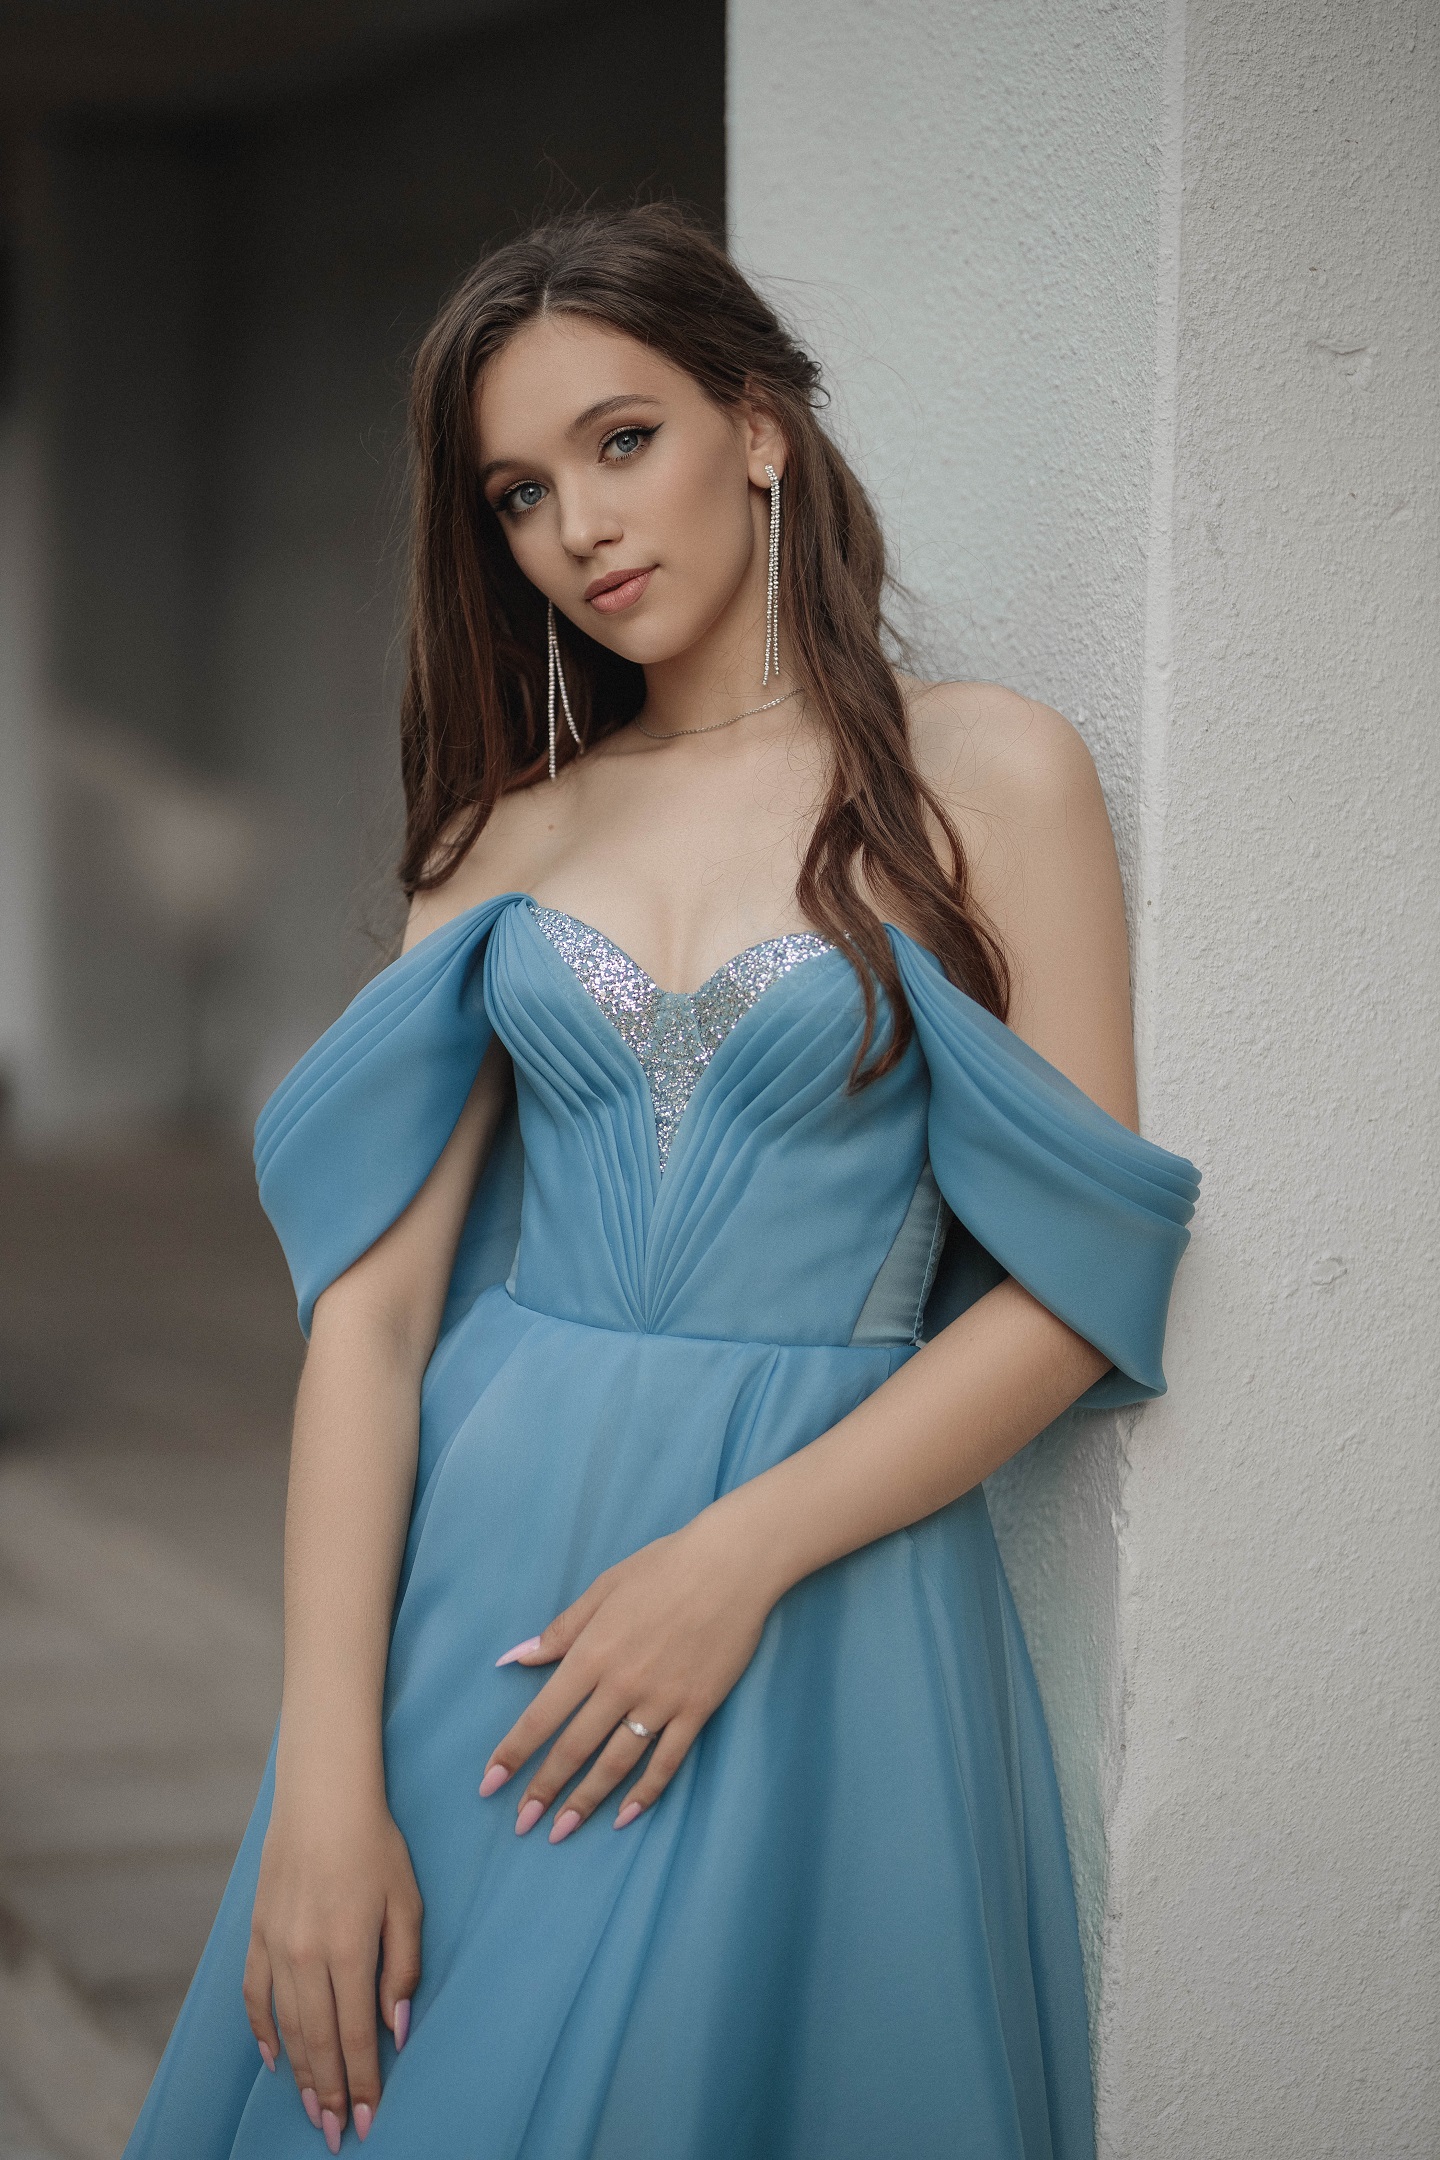 Vladimir Vasilev Women Brunette Bare Shoulders Blue Dress Pillar Gown 1440x2160